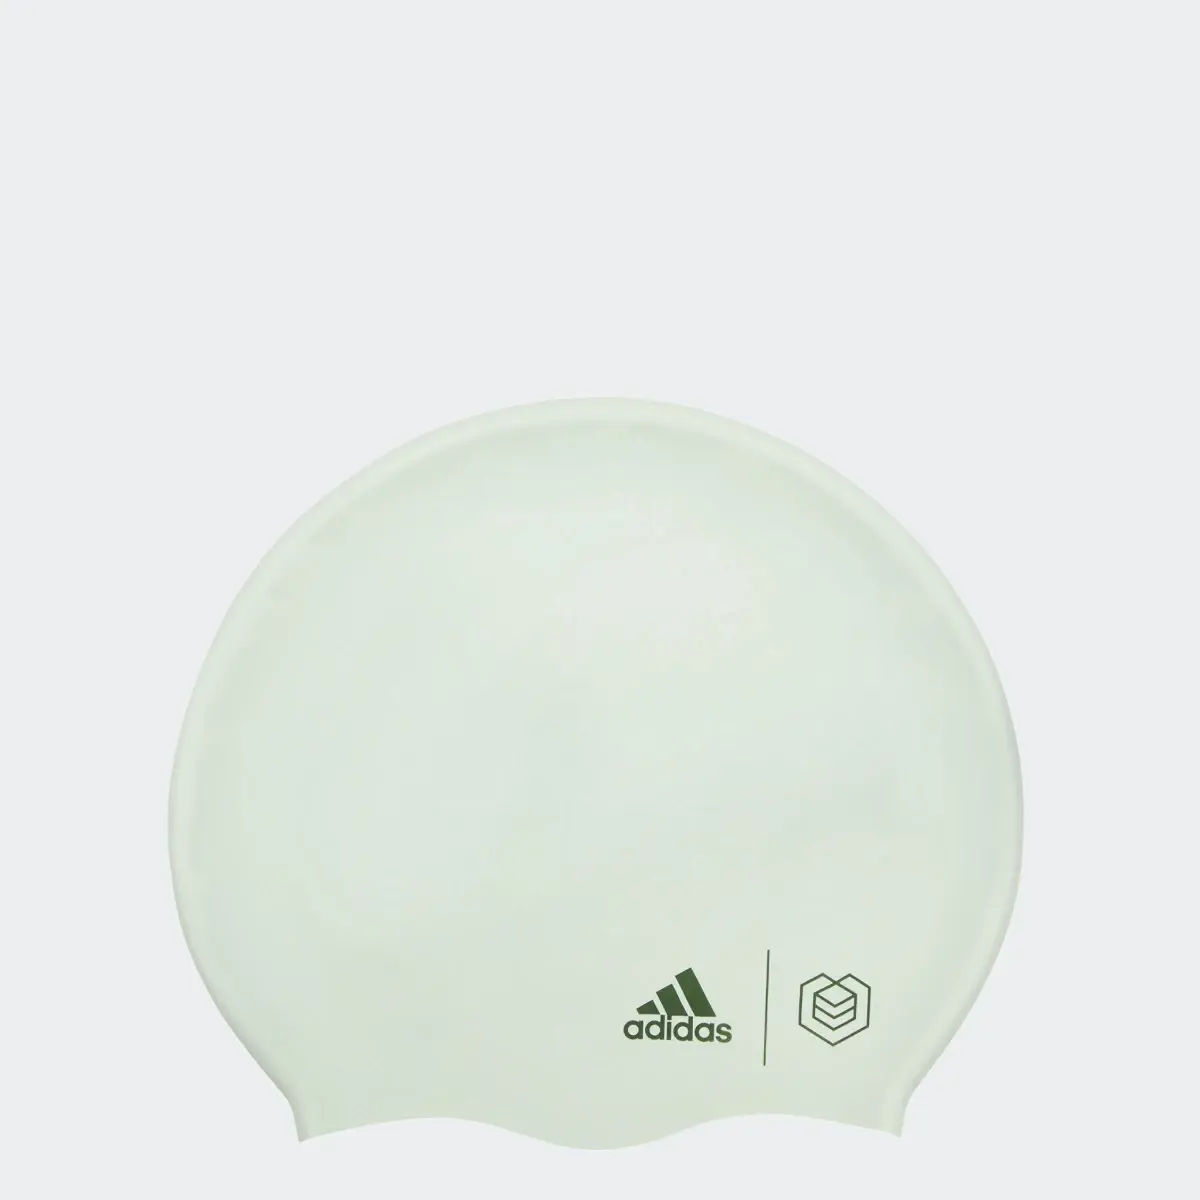 Adidas SOUL CAP Adult Volume Cap. 2